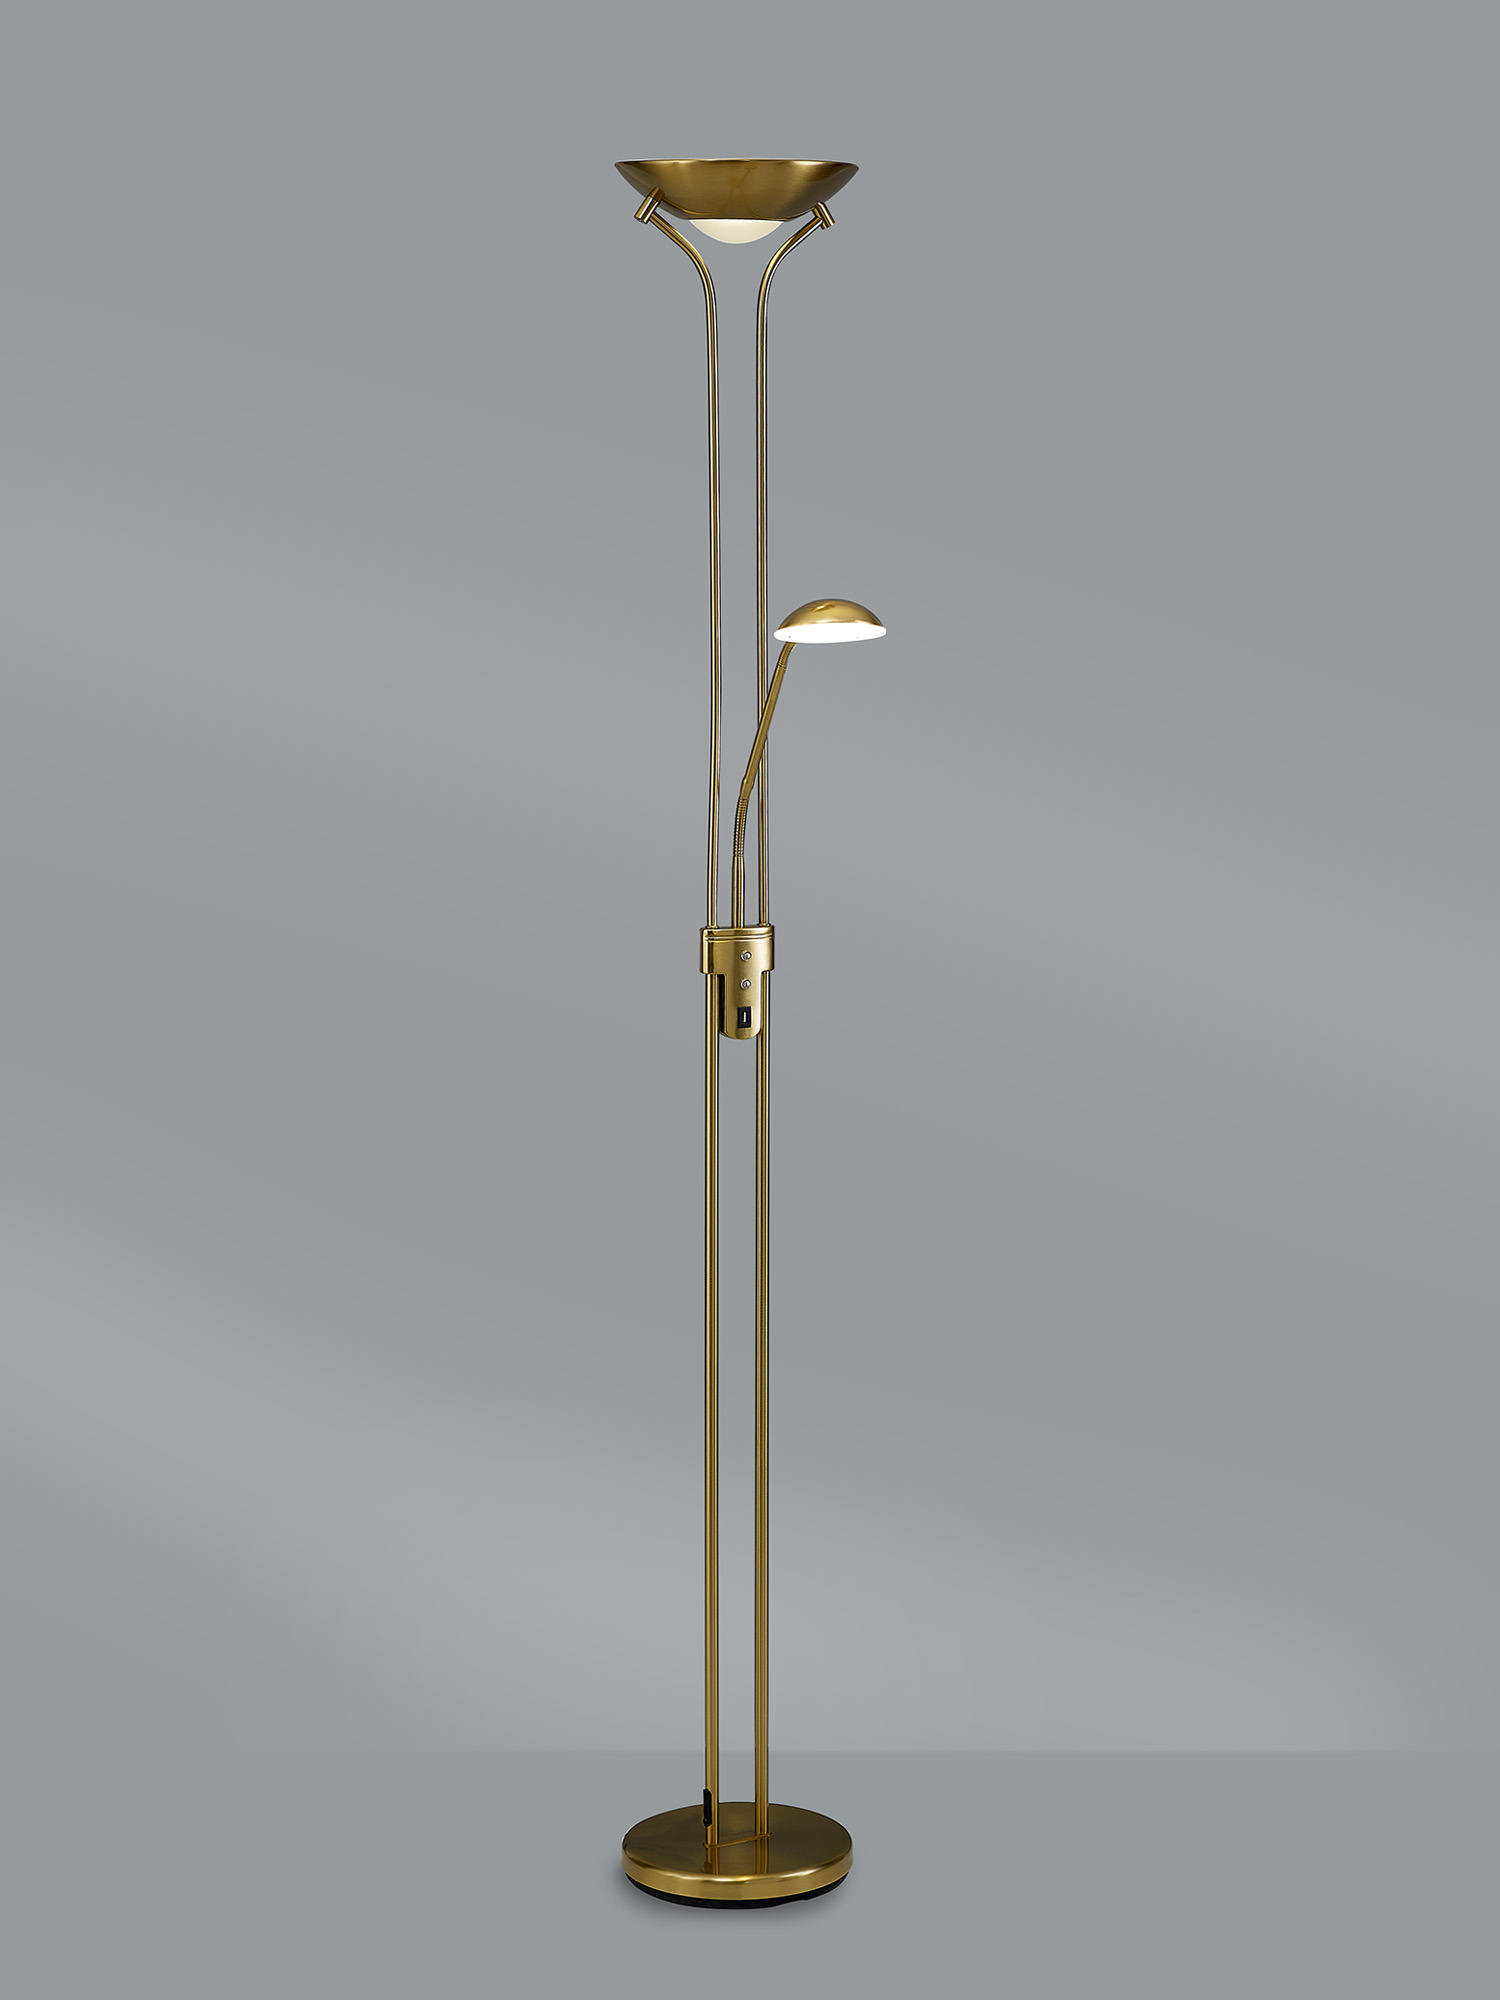 Brazier Floor Lamps Deco Modern Floor Lamps